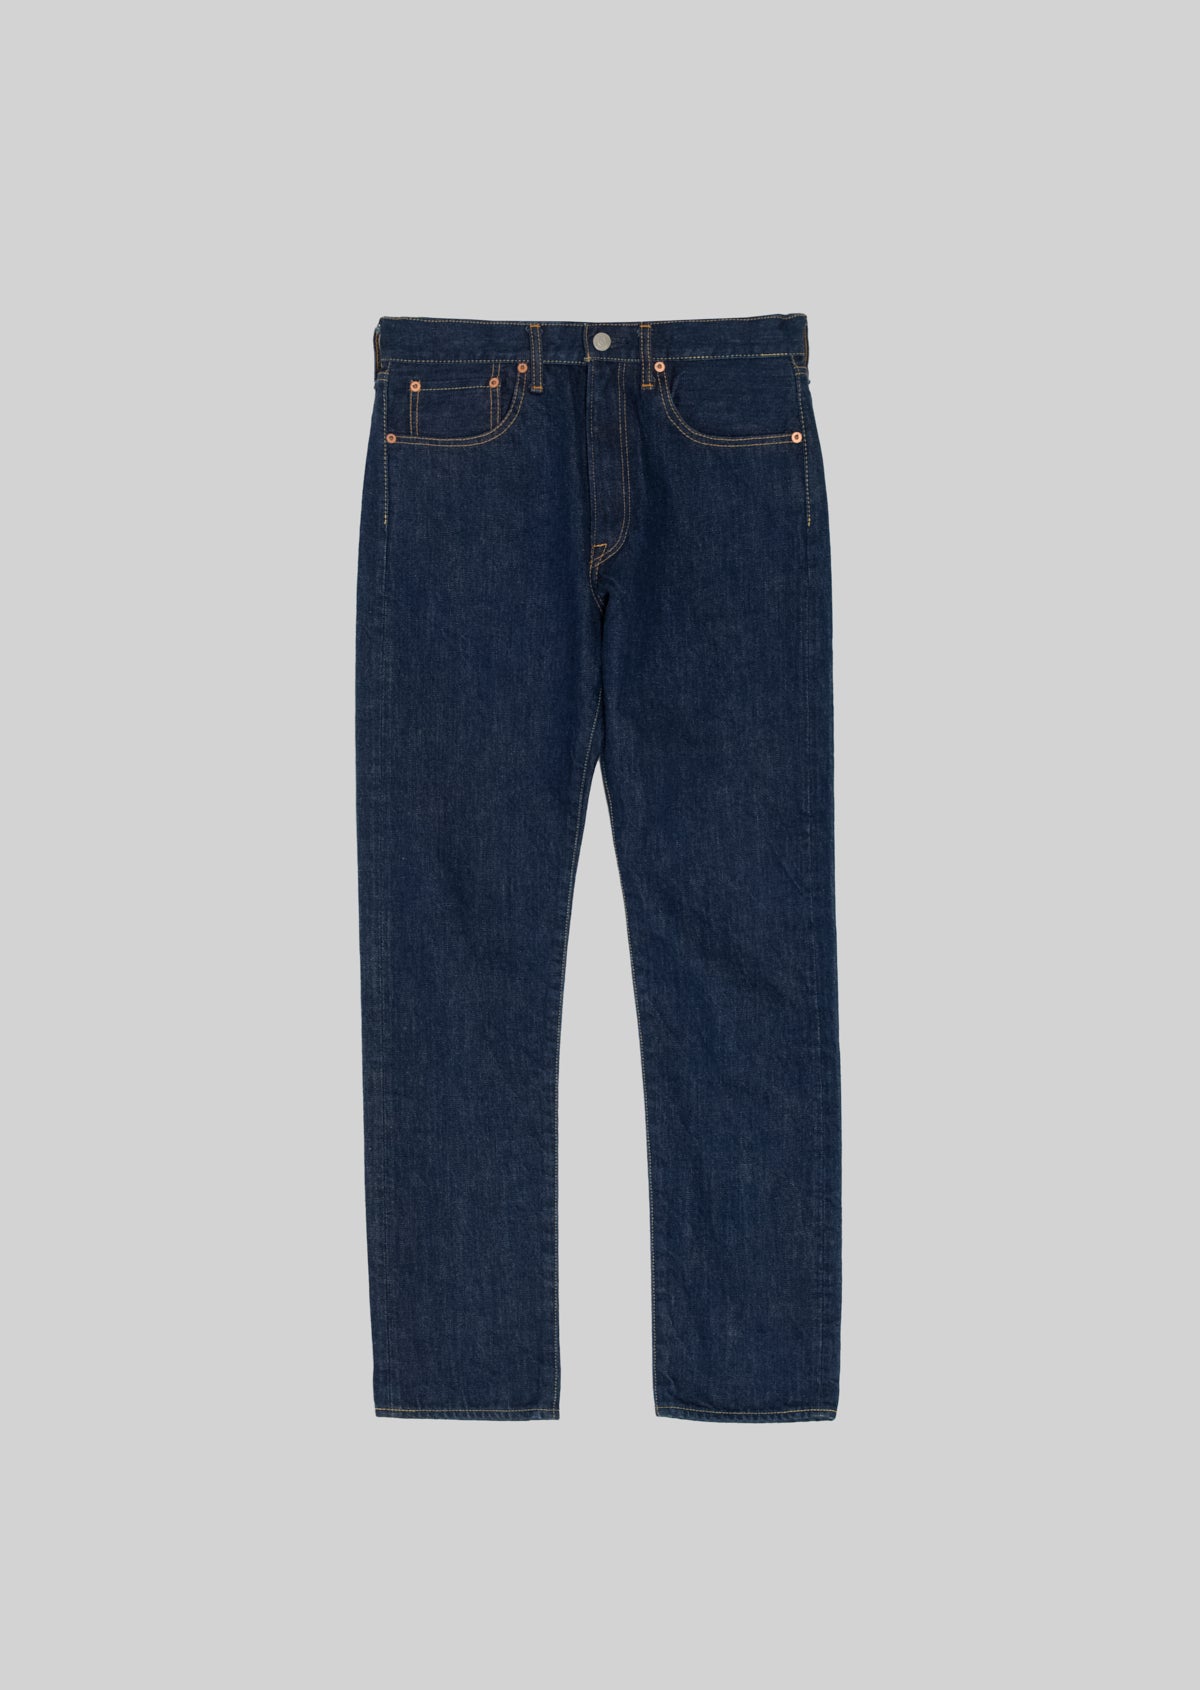 9,840円HANDROOM／ 5 Pocket Jeans Slim Fit